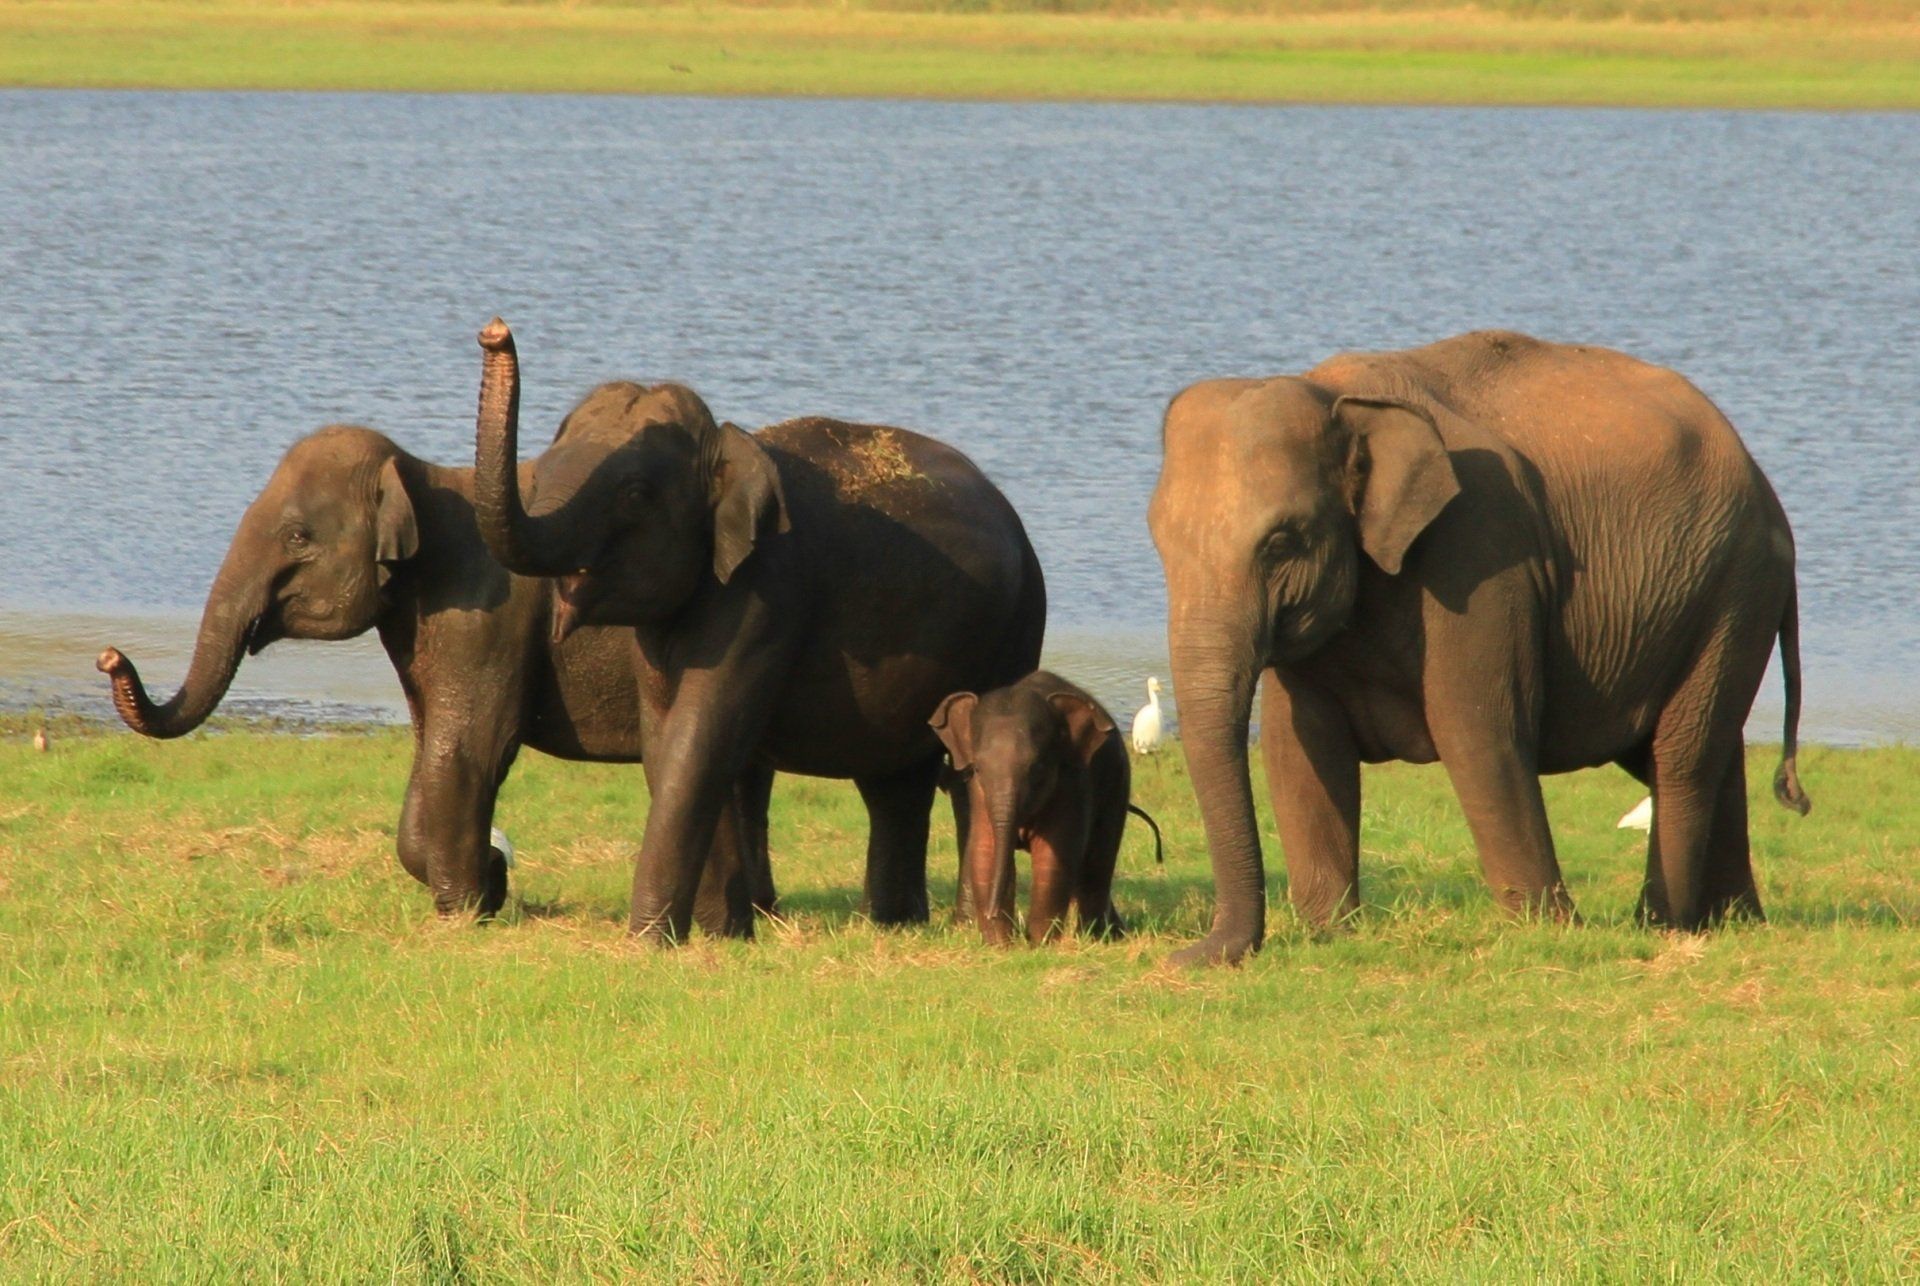 famille d'éléphants au Sri Lanka. association Defense: Wildlife conservation projects